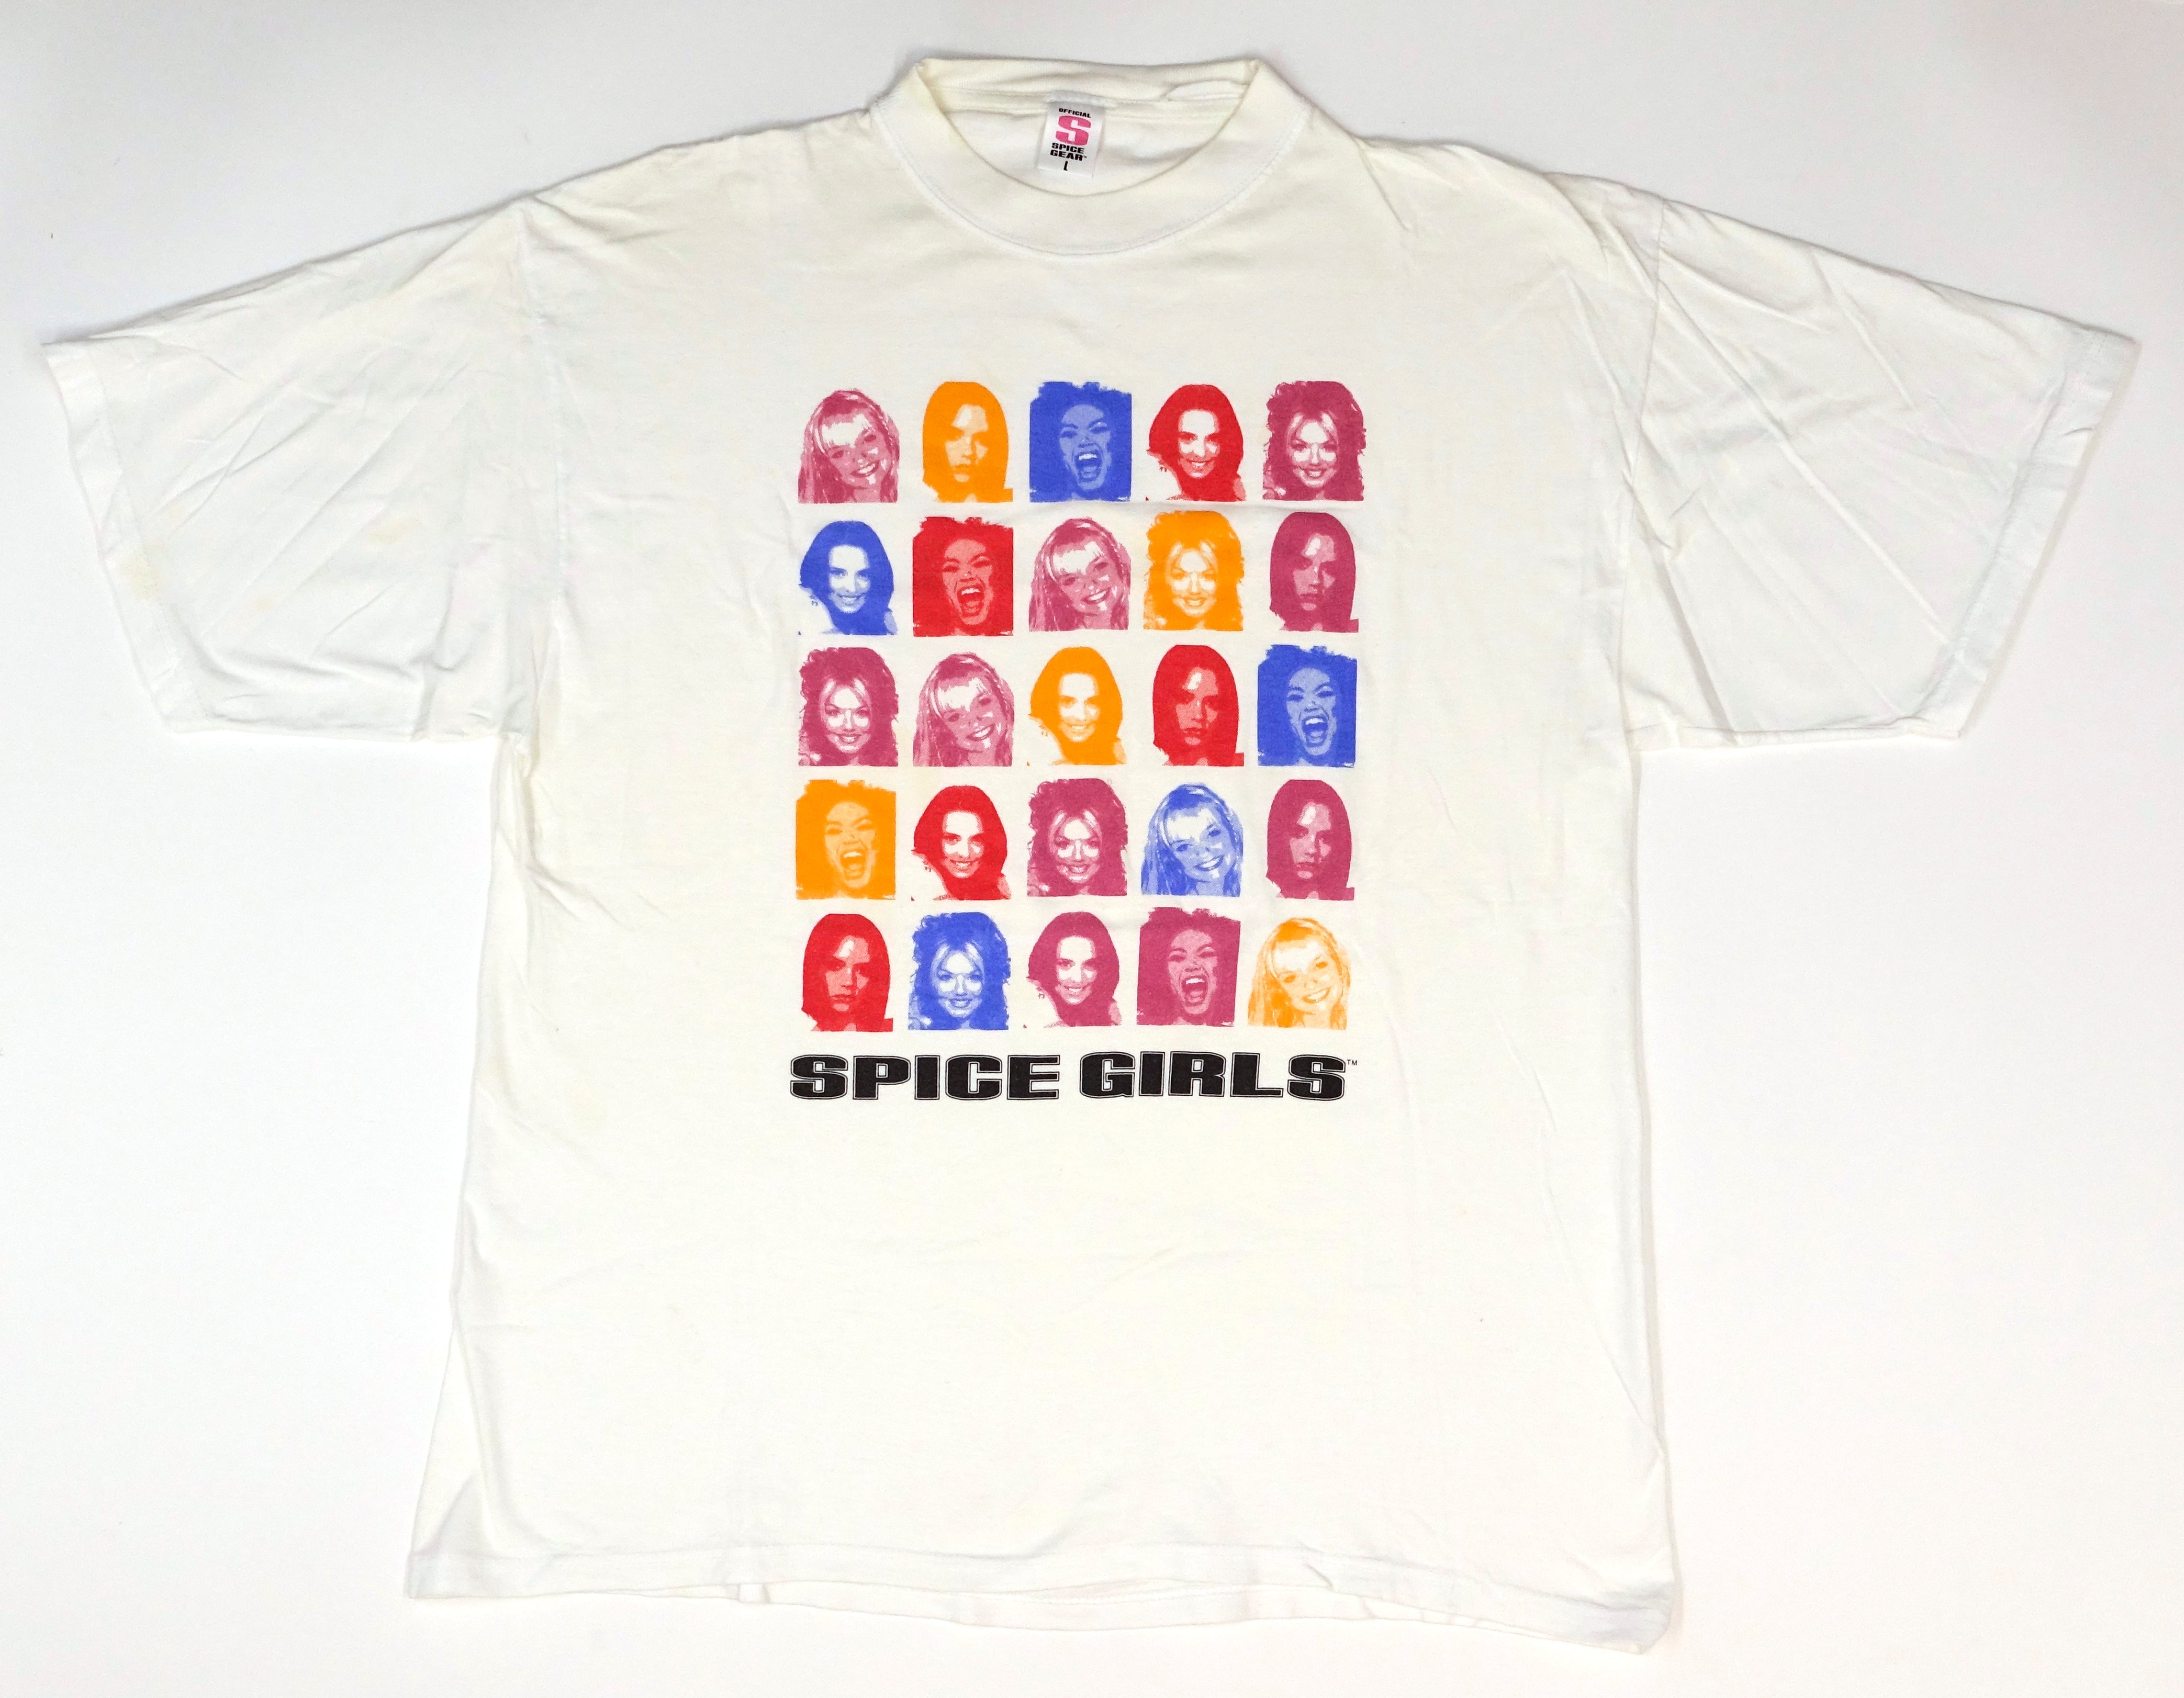 Spice Girls - Headshots Tour Shirt Size Large